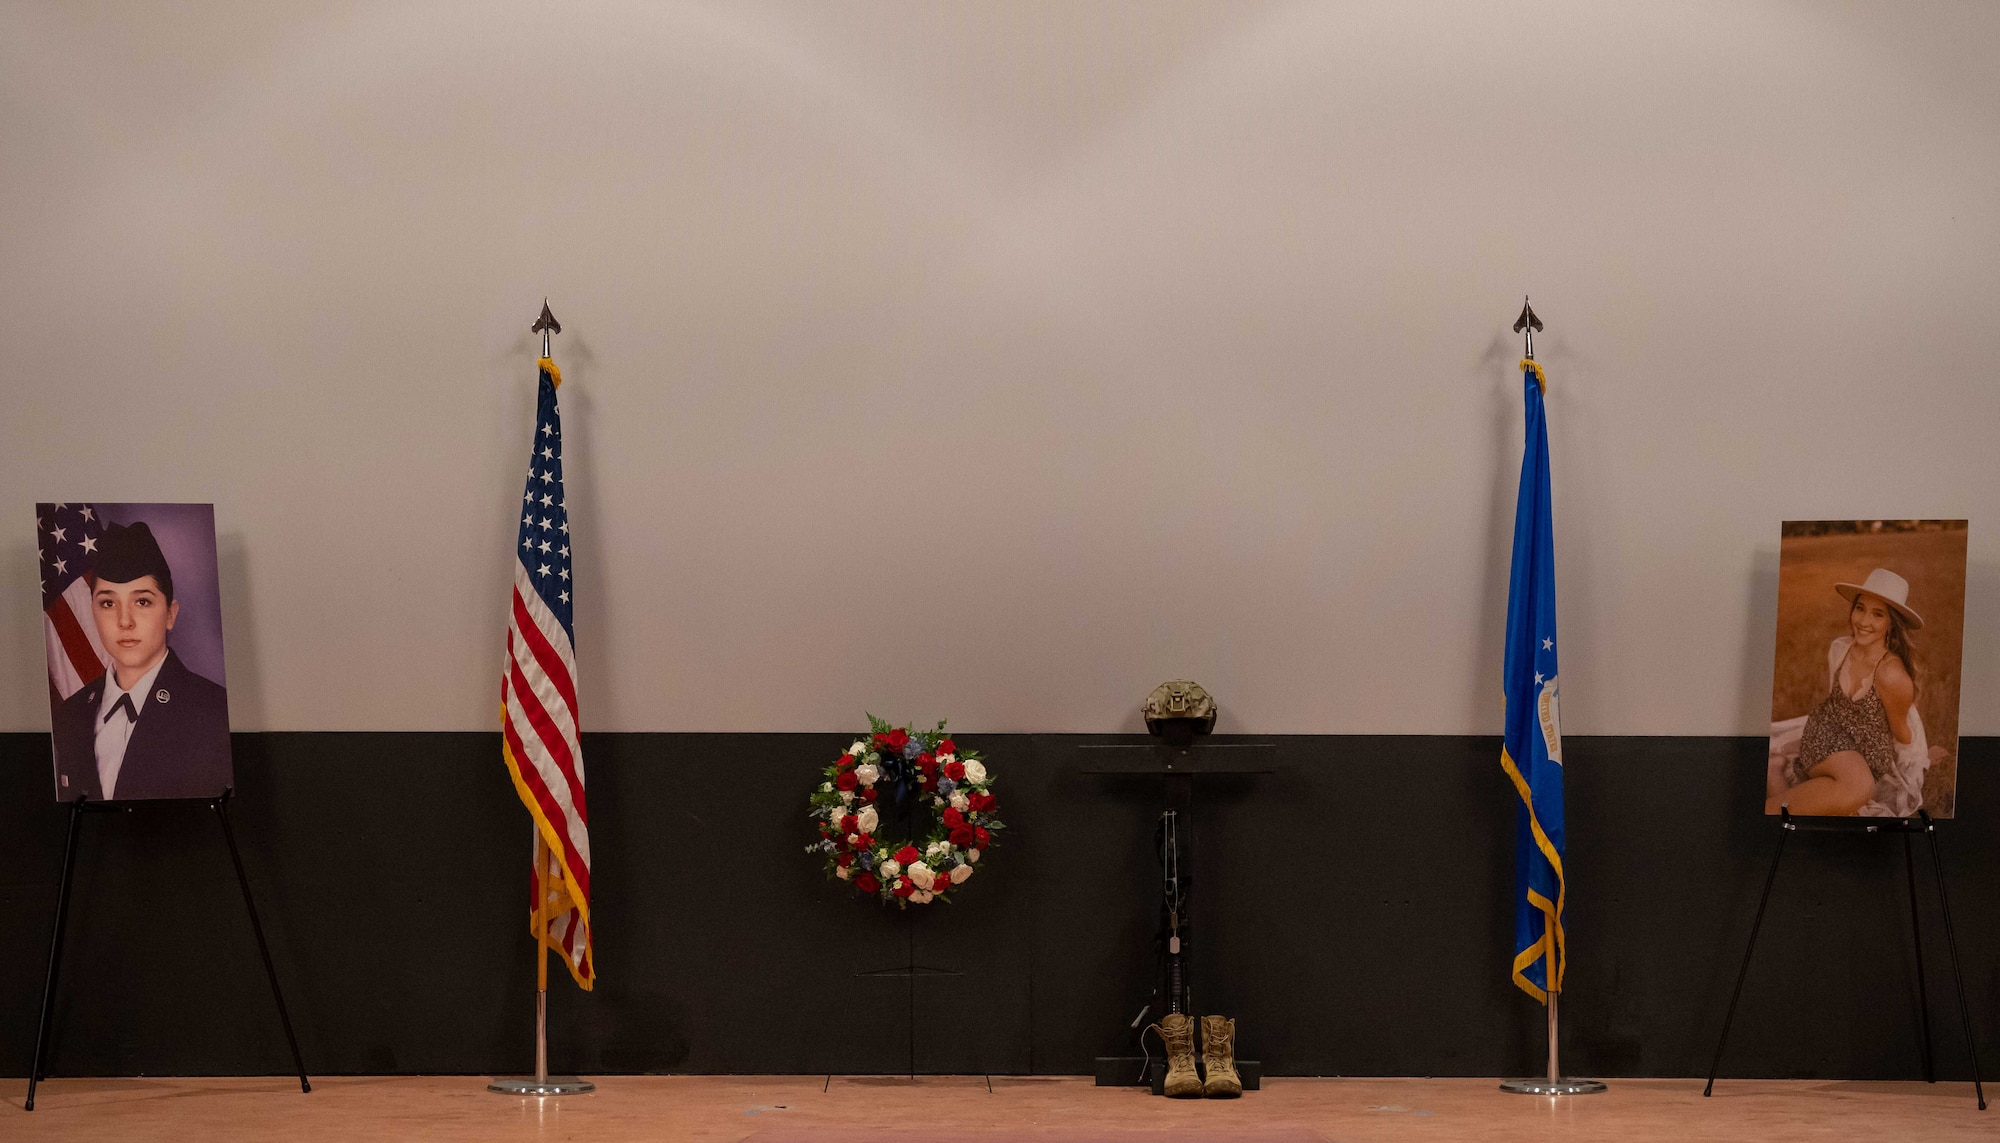 display of airman reinhart's memorial